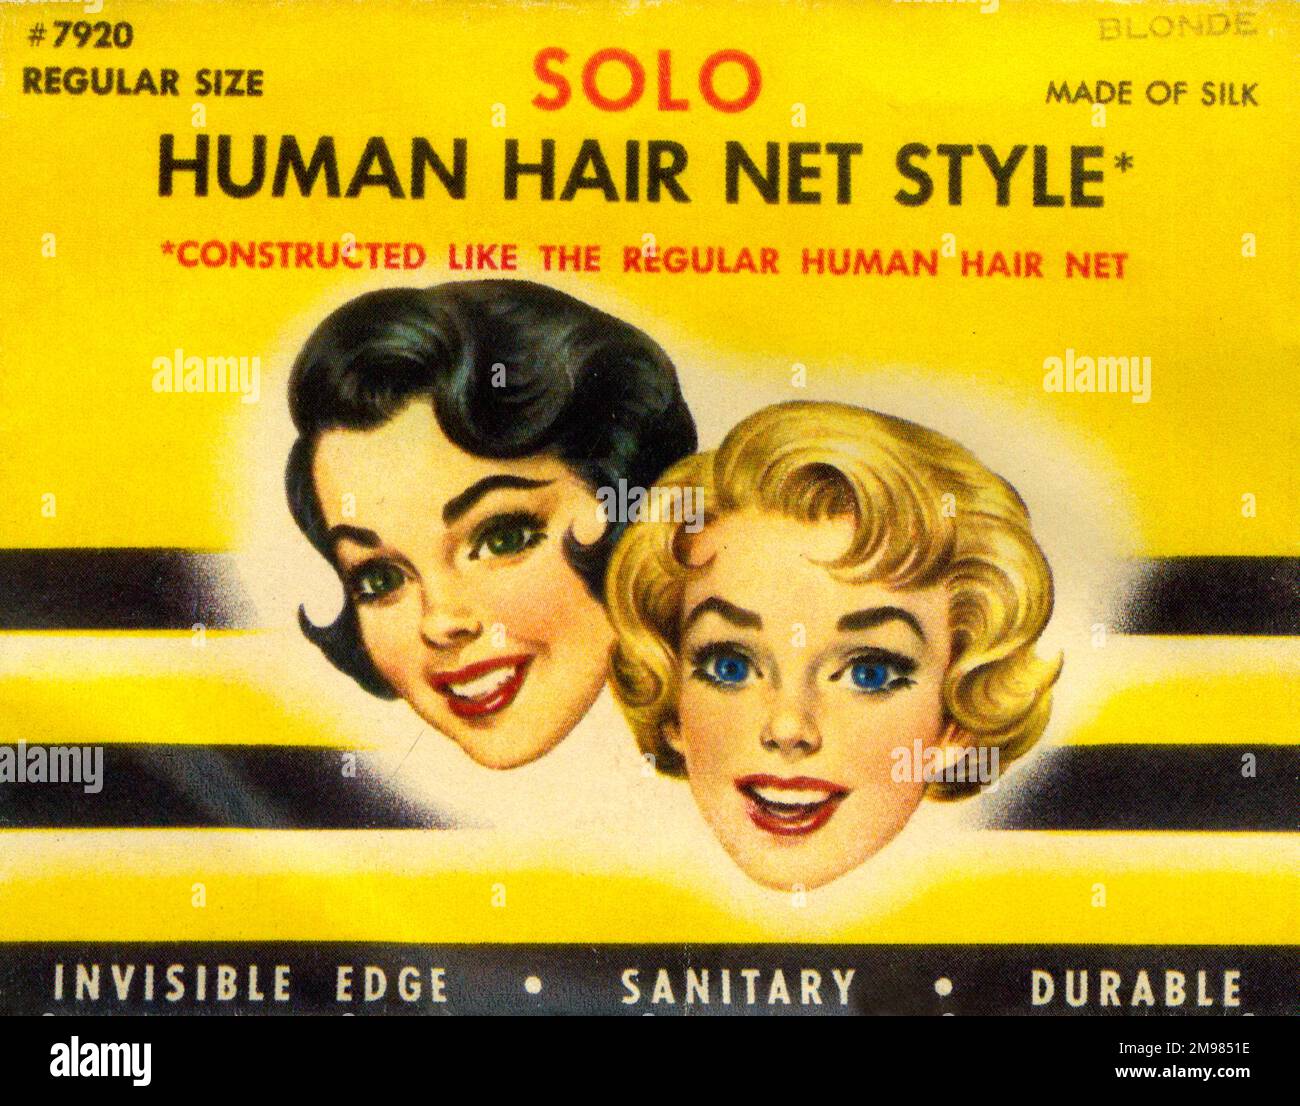 Confezione Vintage Hairnet - solo Human Hair Net Style - misura regolare in biondo - in seta - bordo invisibile, igienico e durevole. Foto Stock